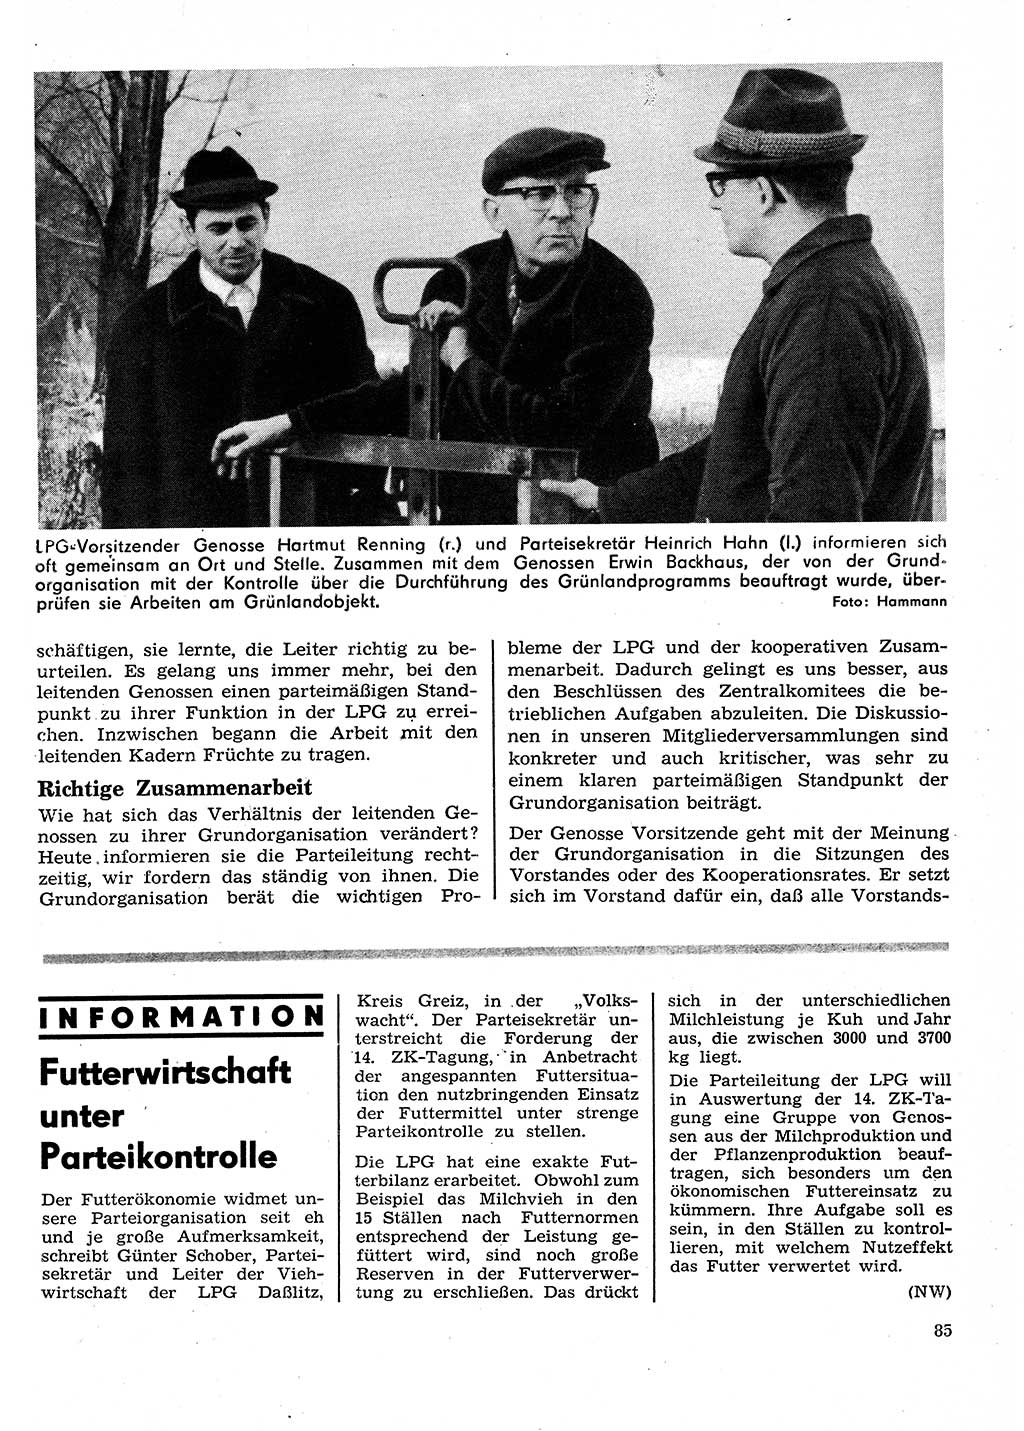 Neuer Weg (NW), Organ des Zentralkomitees (ZK) der SED (Sozialistische Einheitspartei Deutschlands) für Fragen des Parteilebens, 26. Jahrgang [Deutsche Demokratische Republik (DDR)] 1971, Seite 85 (NW ZK SED DDR 1971, S. 85)